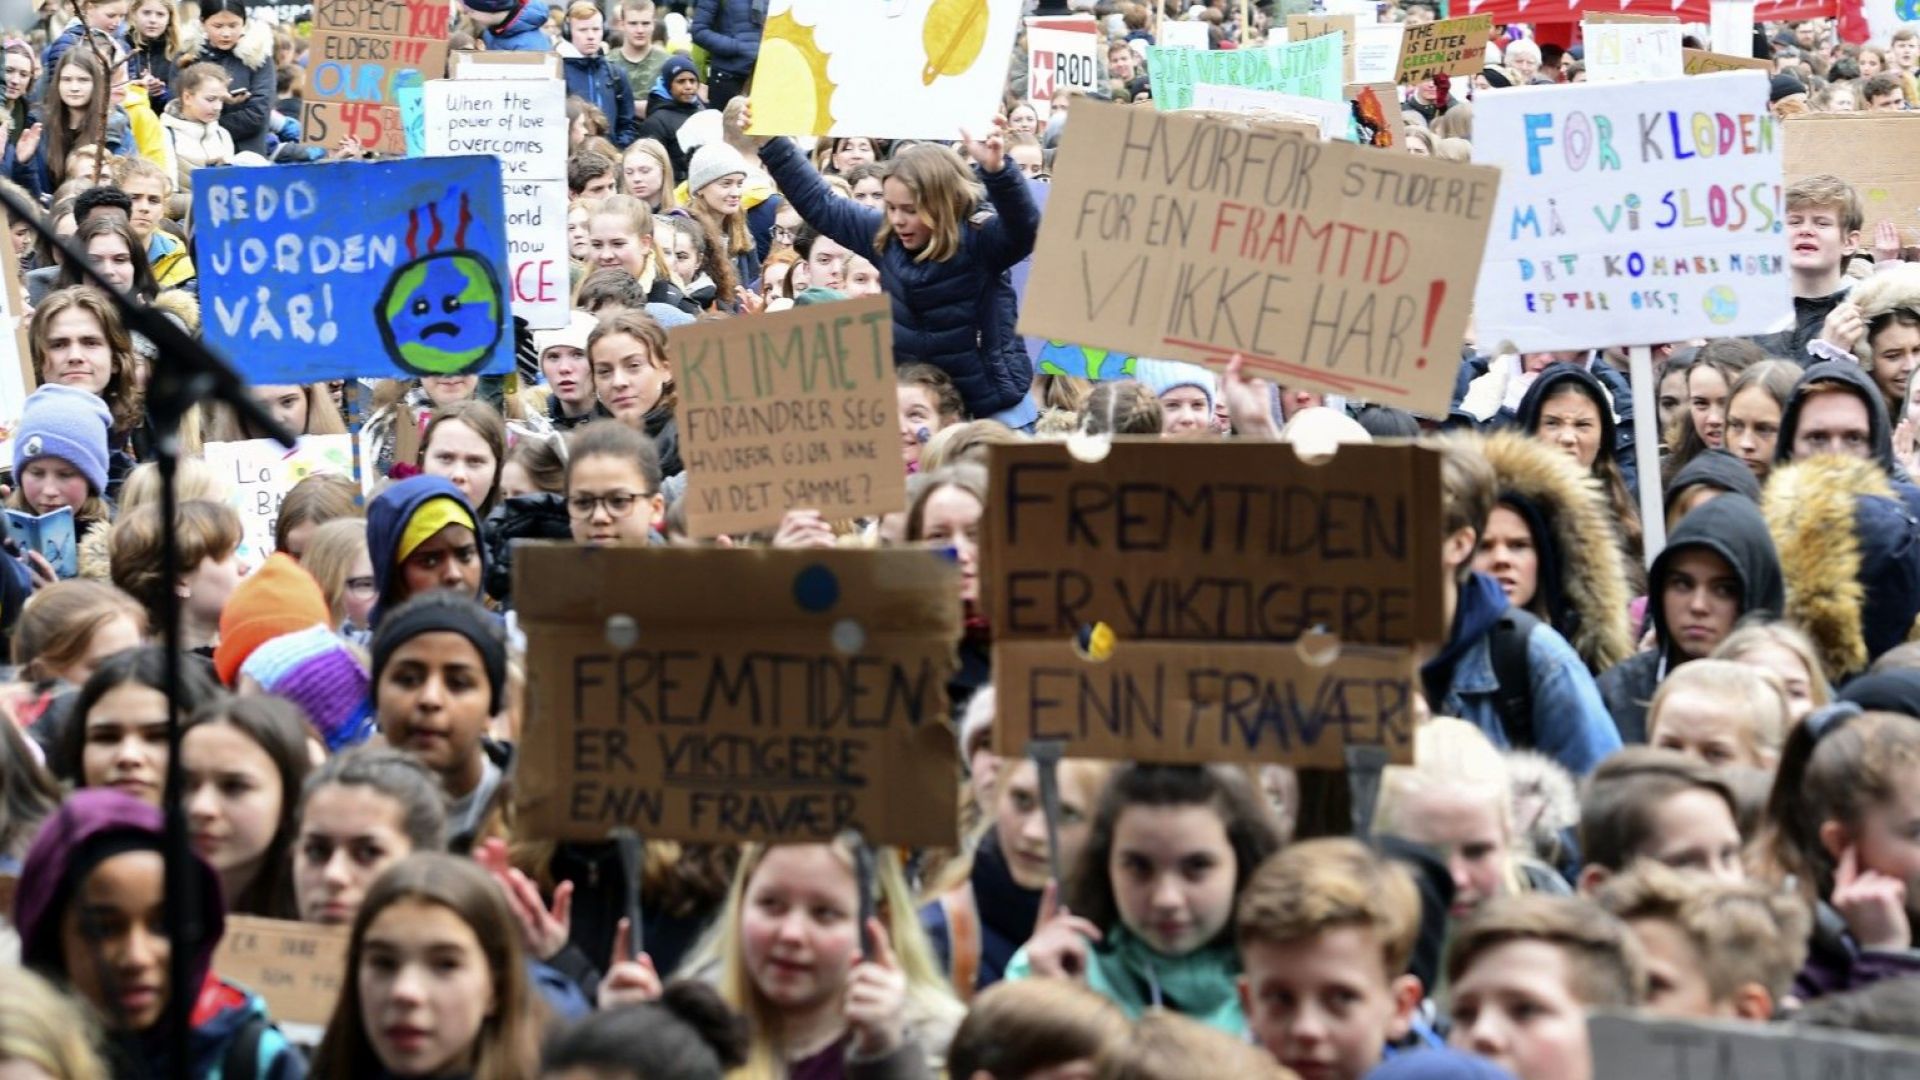 "Петъци за бъдещето": Ученически стачки  ще има днес в повече от 1600 града в над 100 страни 